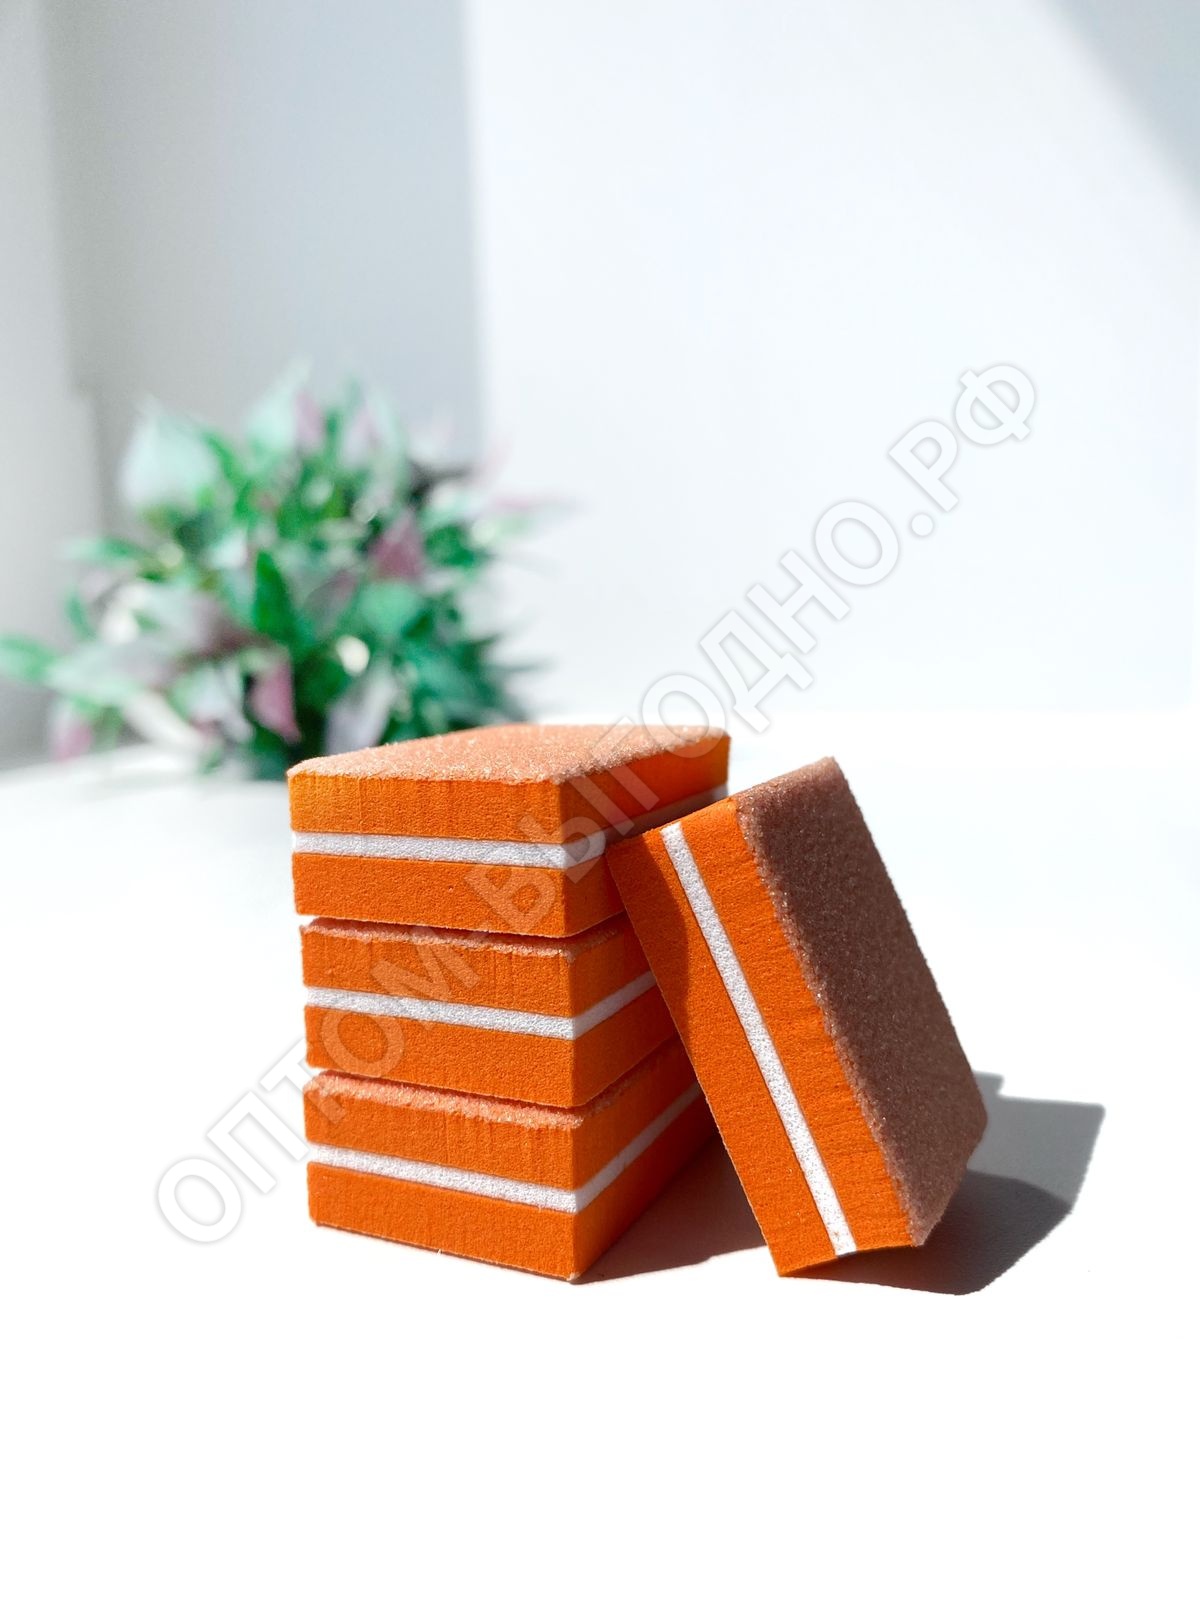 Баф-мини, упаковка 50шт (Оранжевый)